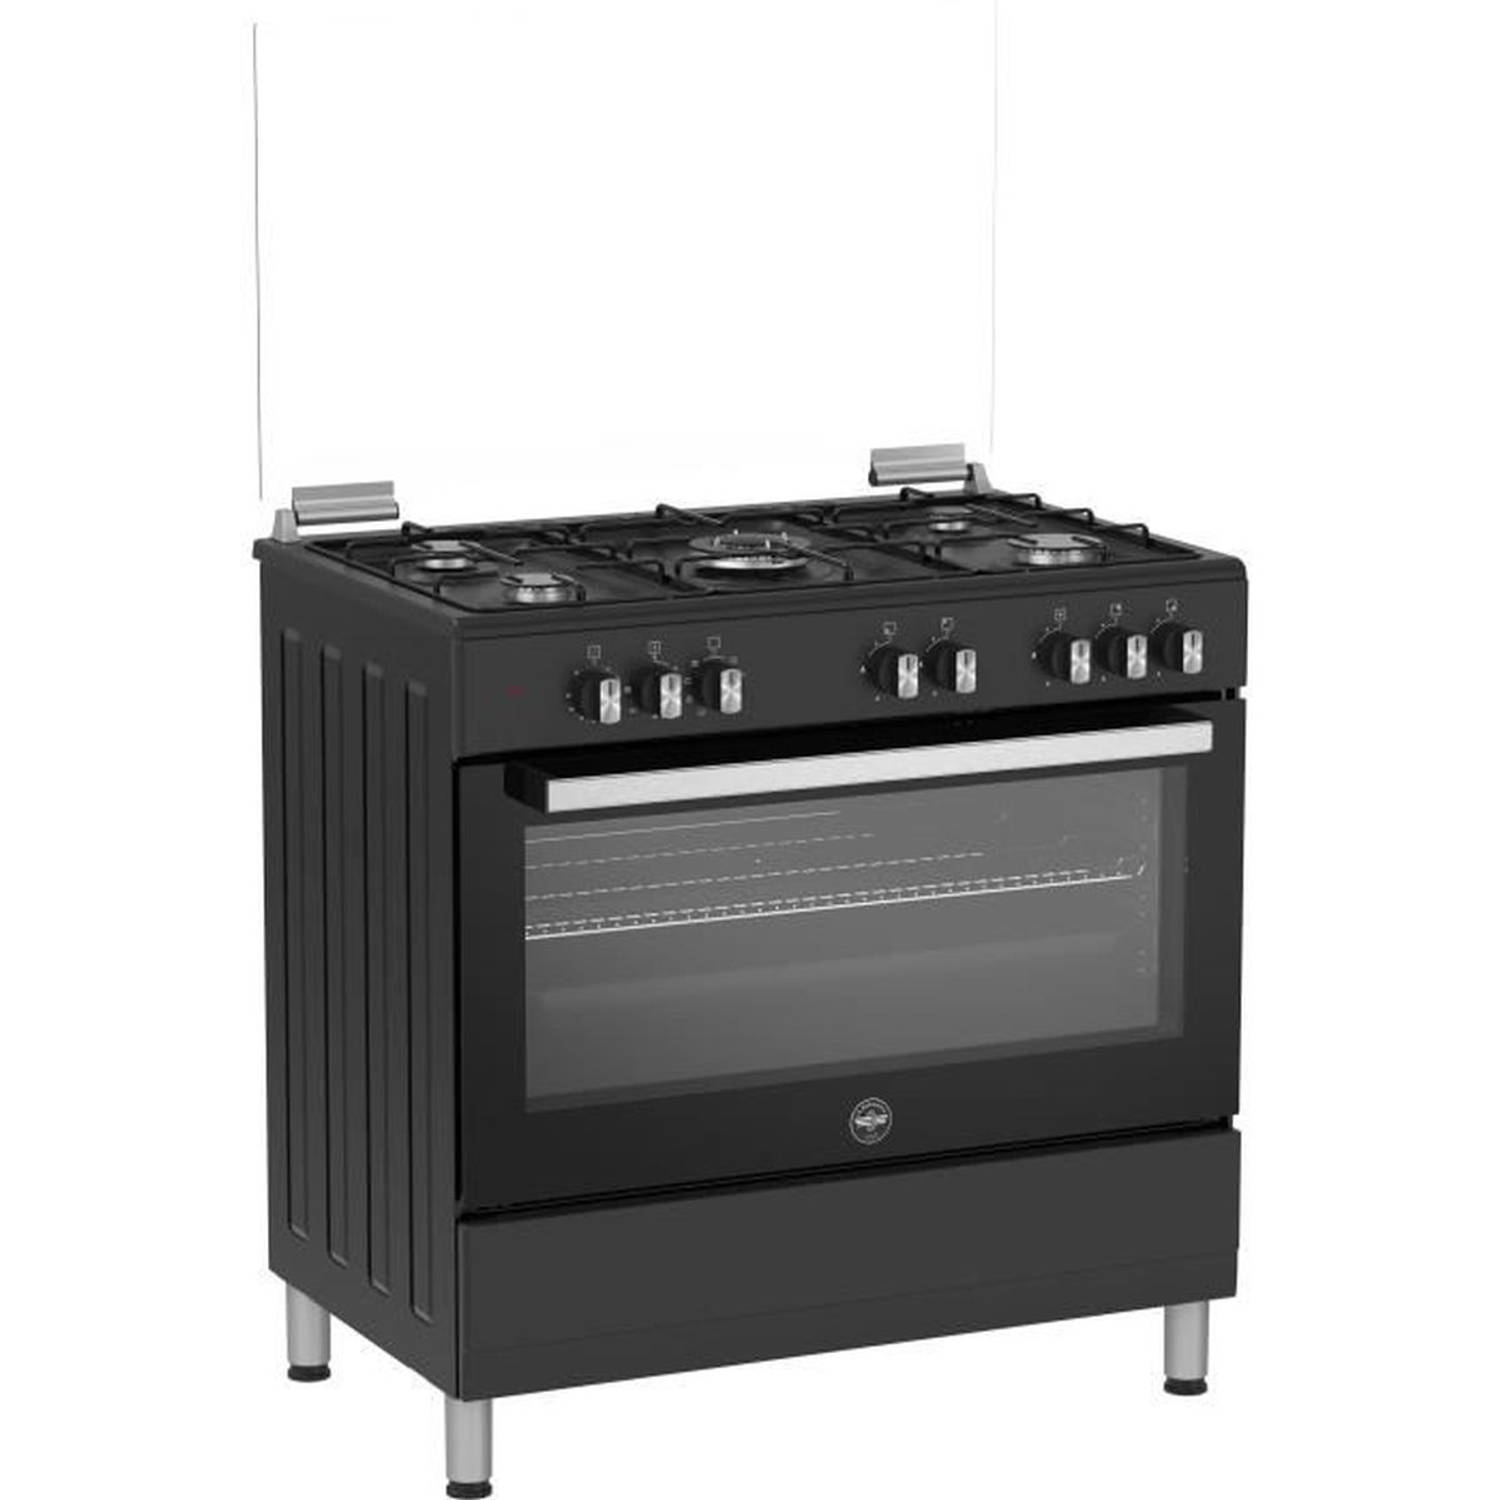 LA GERMANIA kooktoestel sel9mn 5 gaspitten electrische oven multifunctioneel Zwart